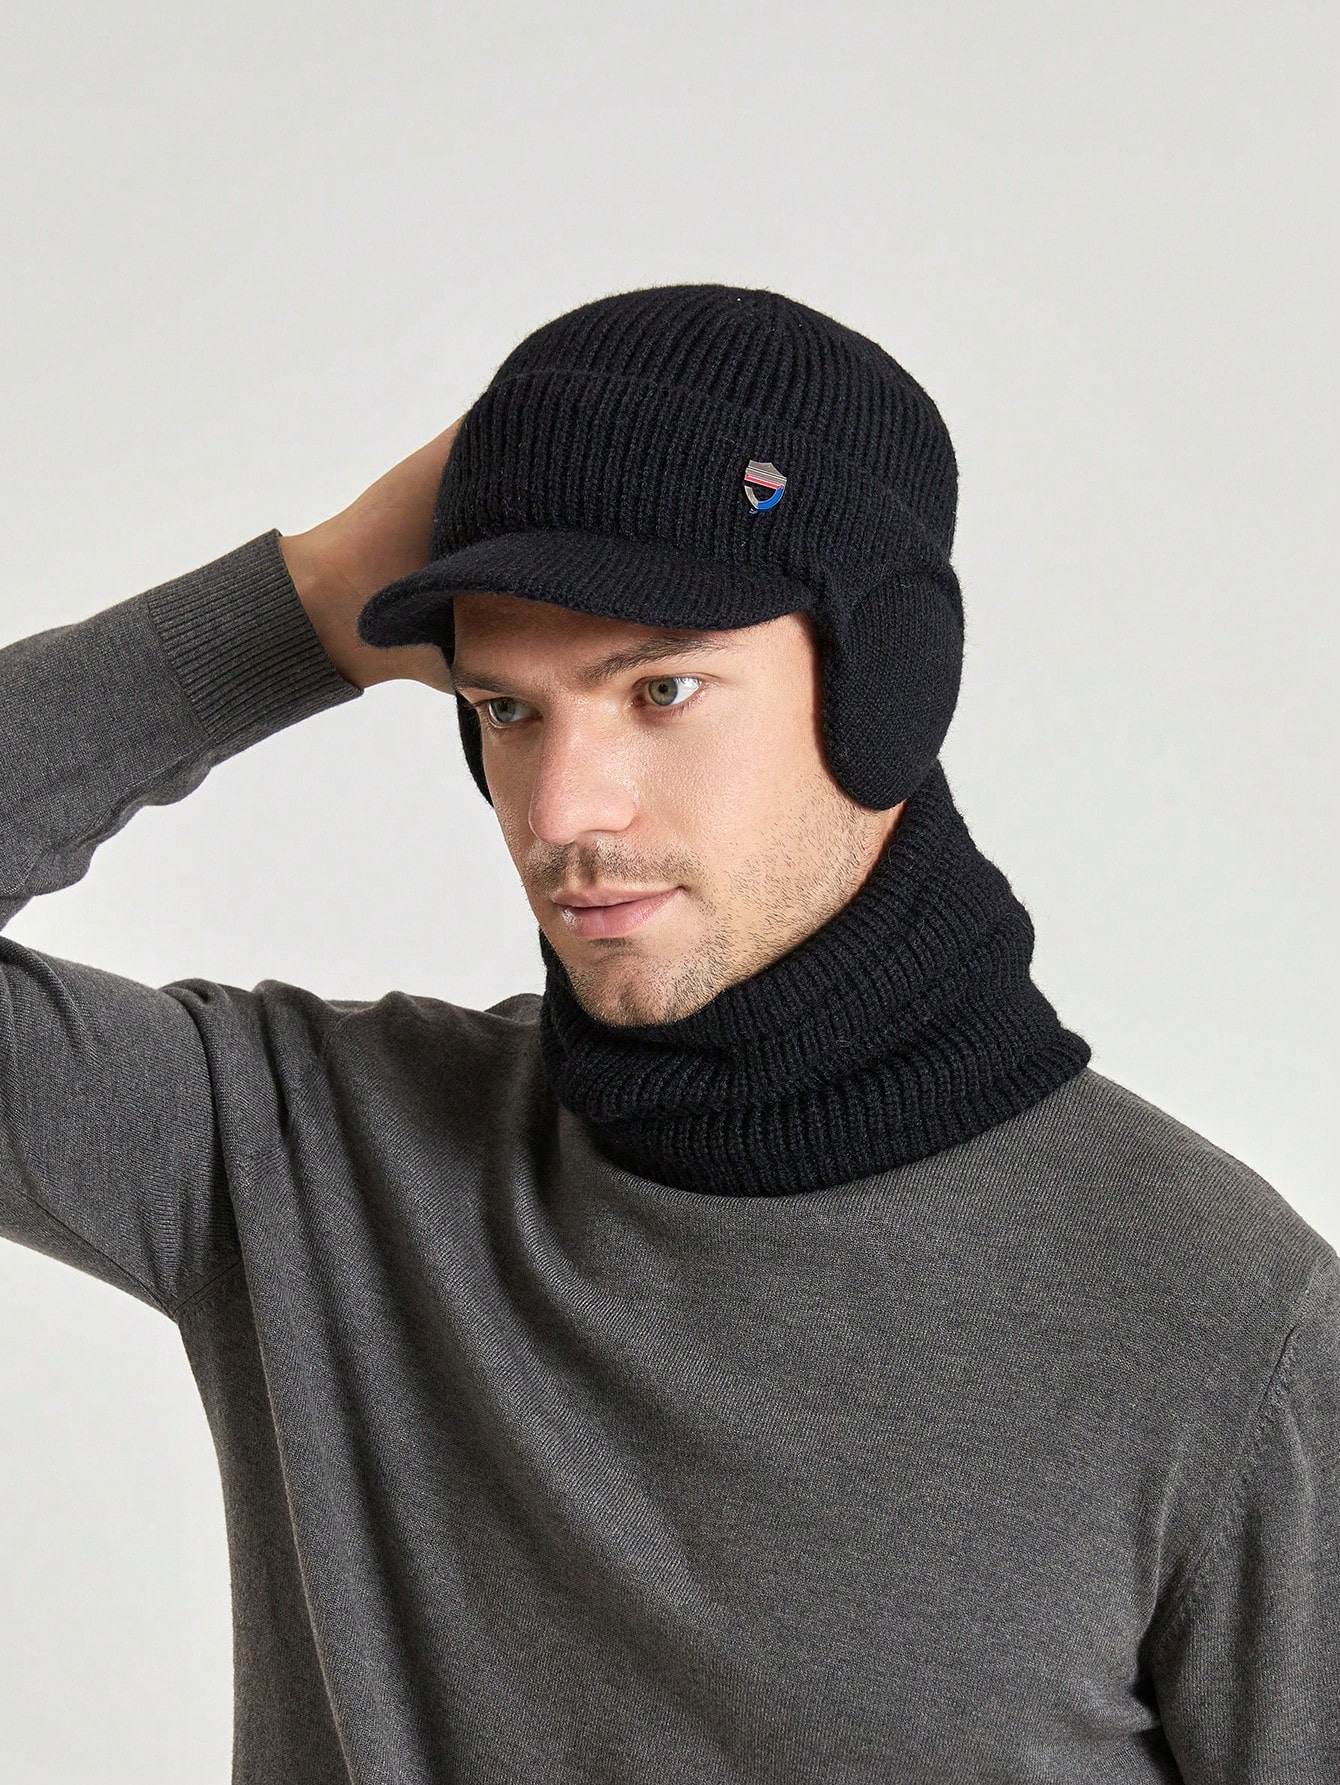 1 комплект мужских утолщенных ушей, серая кашемировая вязаная шапка и шарф, черный